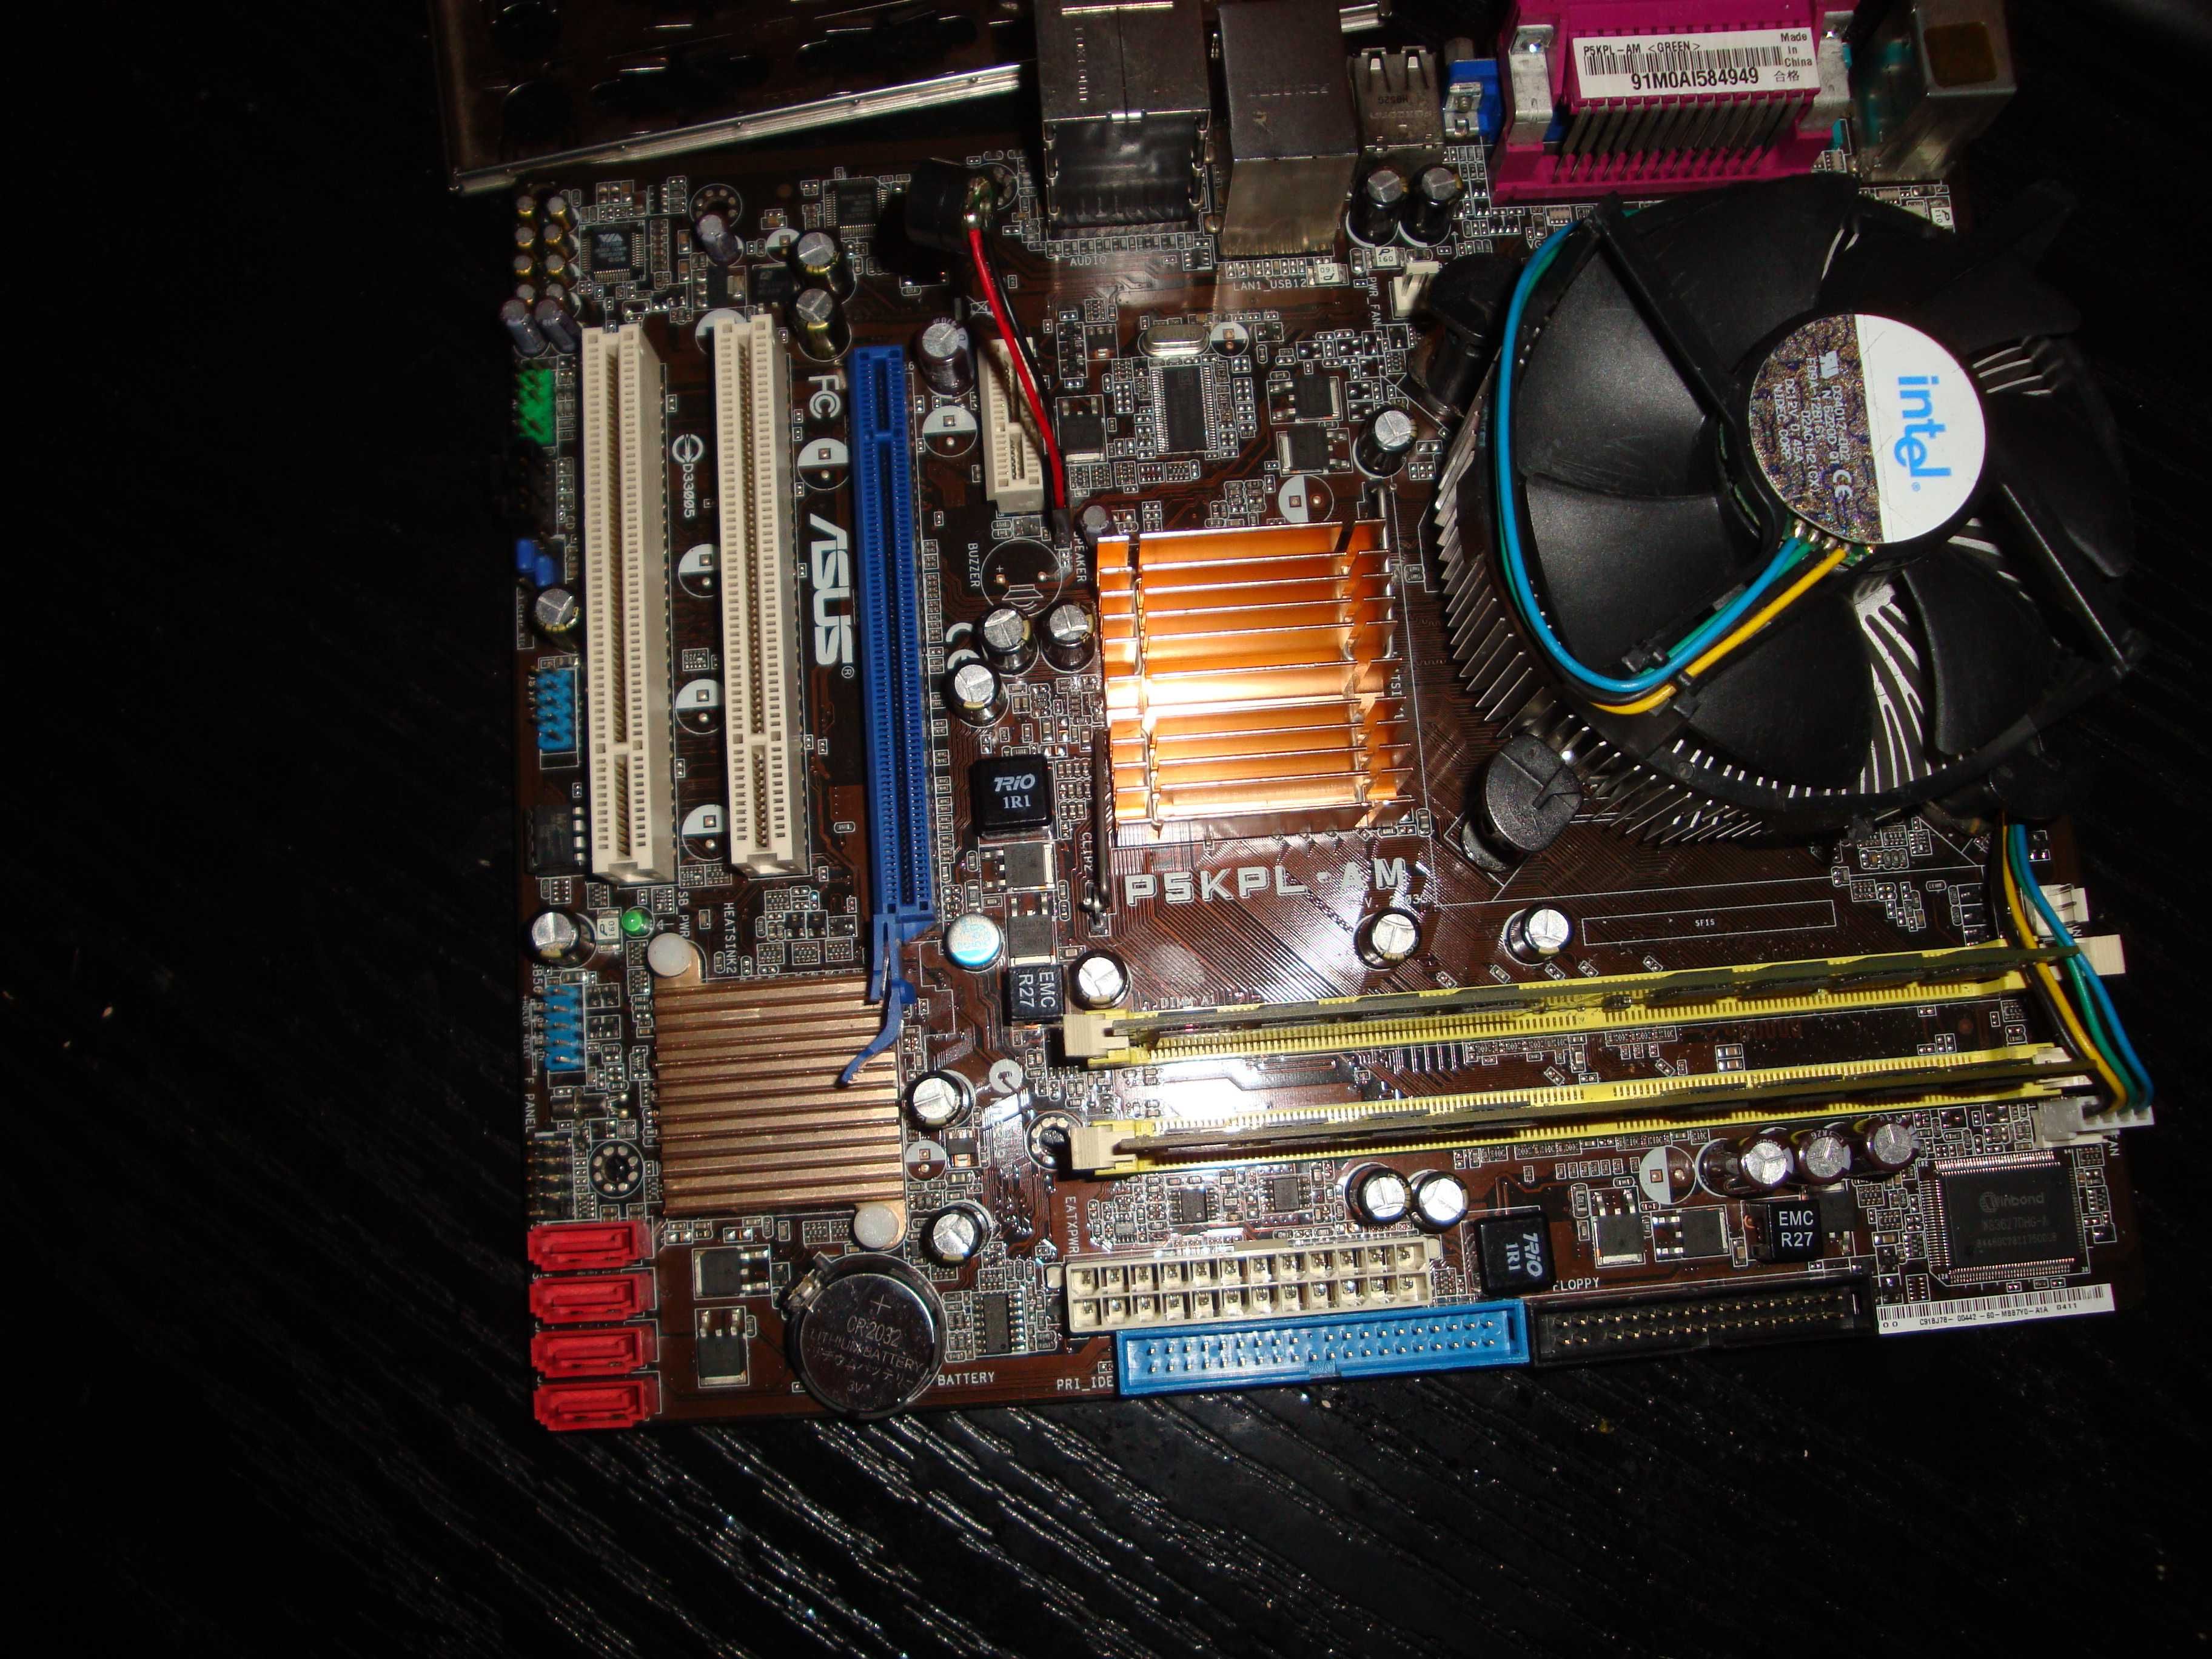 kit PC Asus P5KPL-AM Core 2 duo E7200 2.53Ghz FSB 1066 4GB Ram DDR2